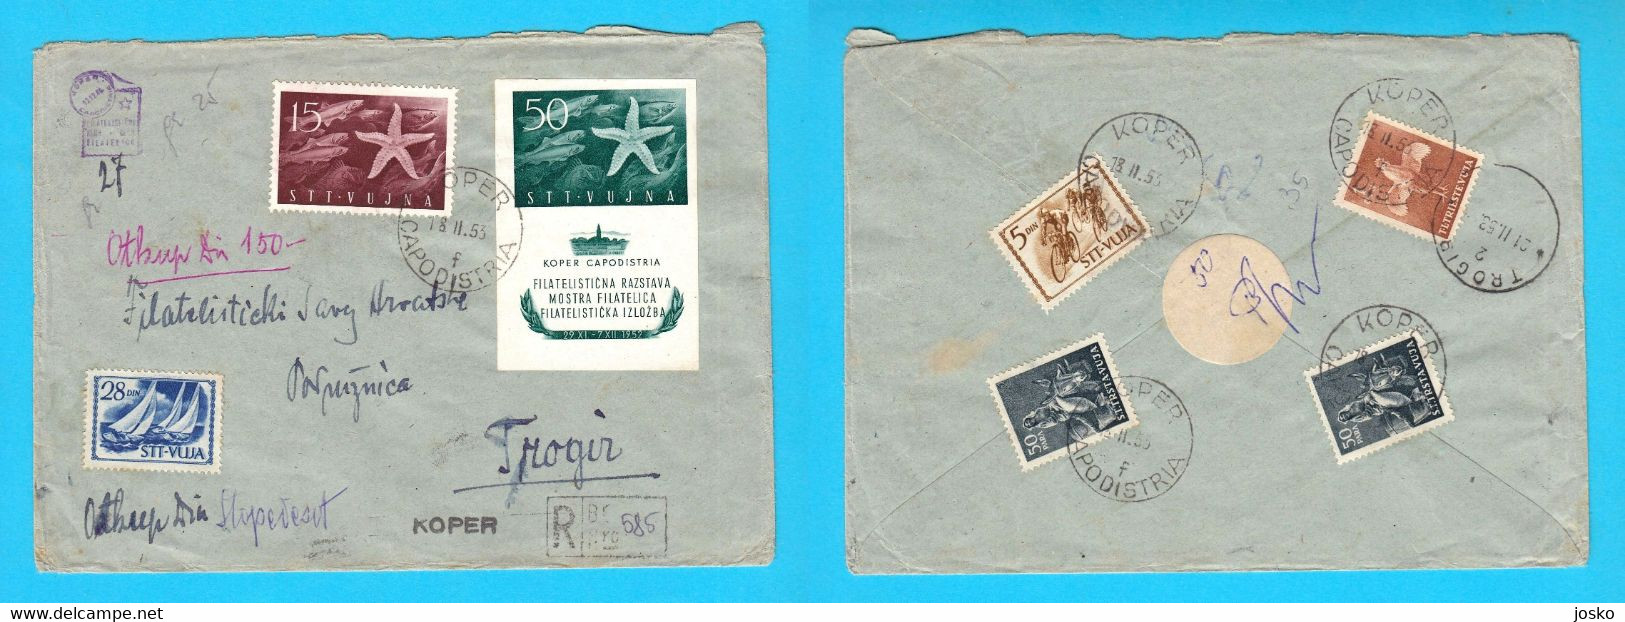 TRIESTE ZONA B STT VUJNA VUJA Registered Letter Travelled 1953 Koper Capodistria Yugoslavia Slovenia Istria Italy Italia - Storia Postale